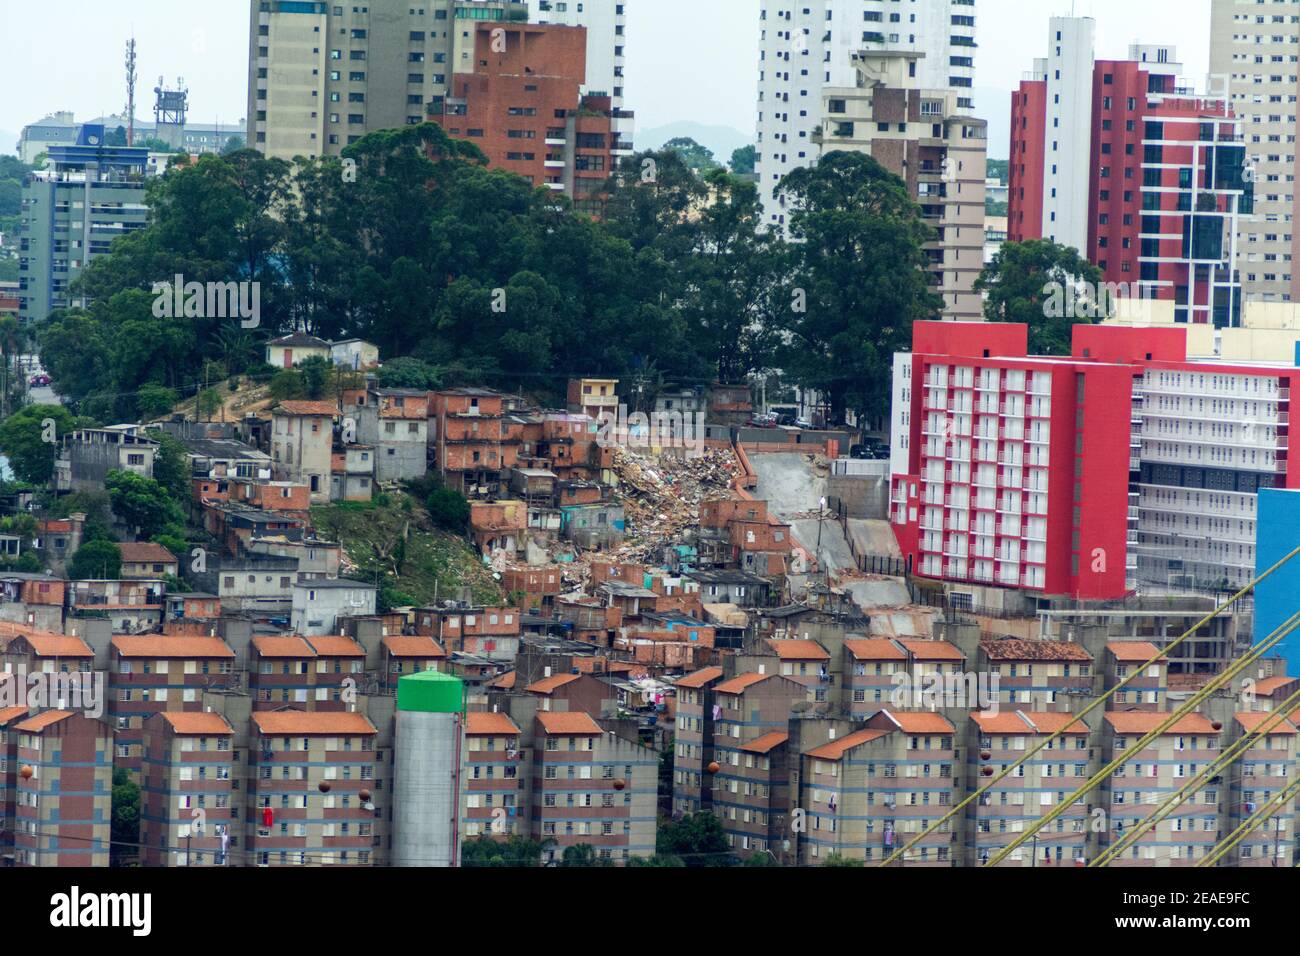 Le jardin Edite domaine social de logement qui a remplacé la grande favela à Sao Paulo, Brésil. Banque D'Images